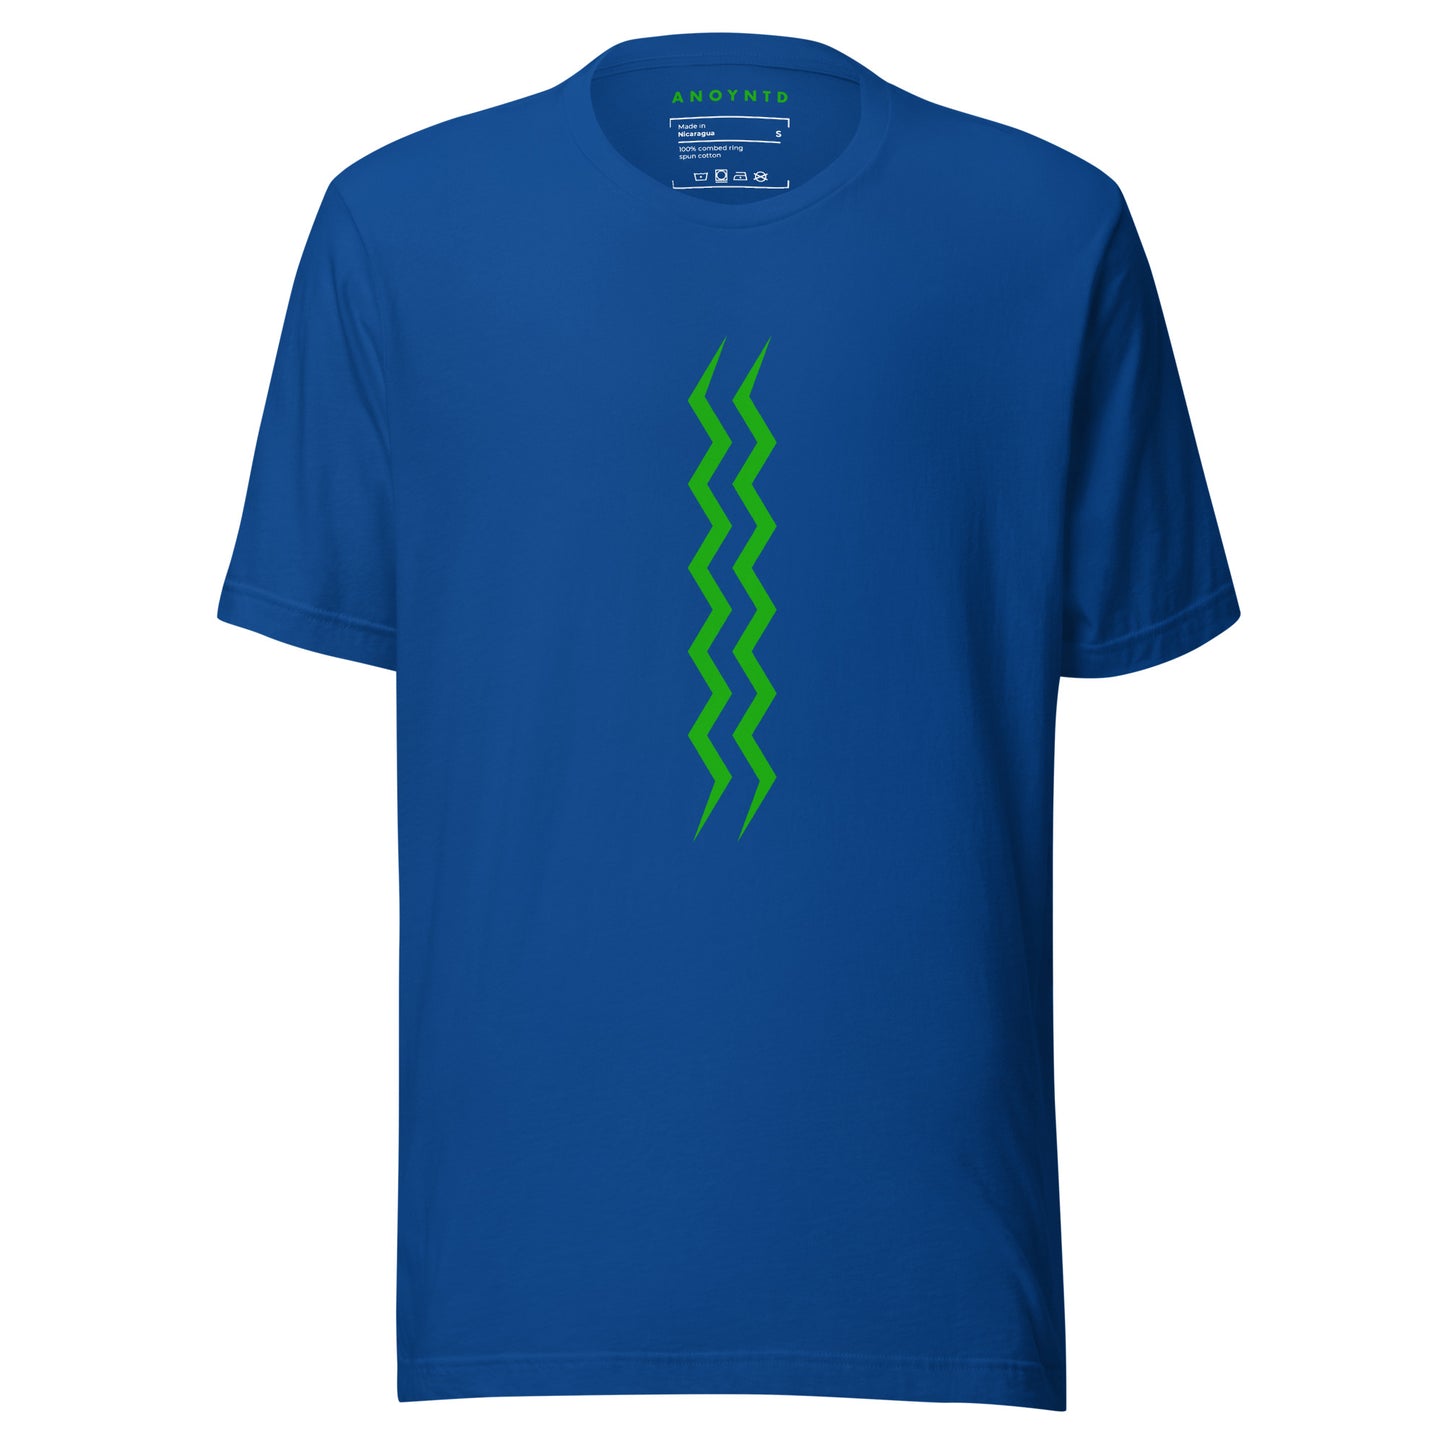 ANOYNTD Vertical Series (Gr) Unisex t-shirt